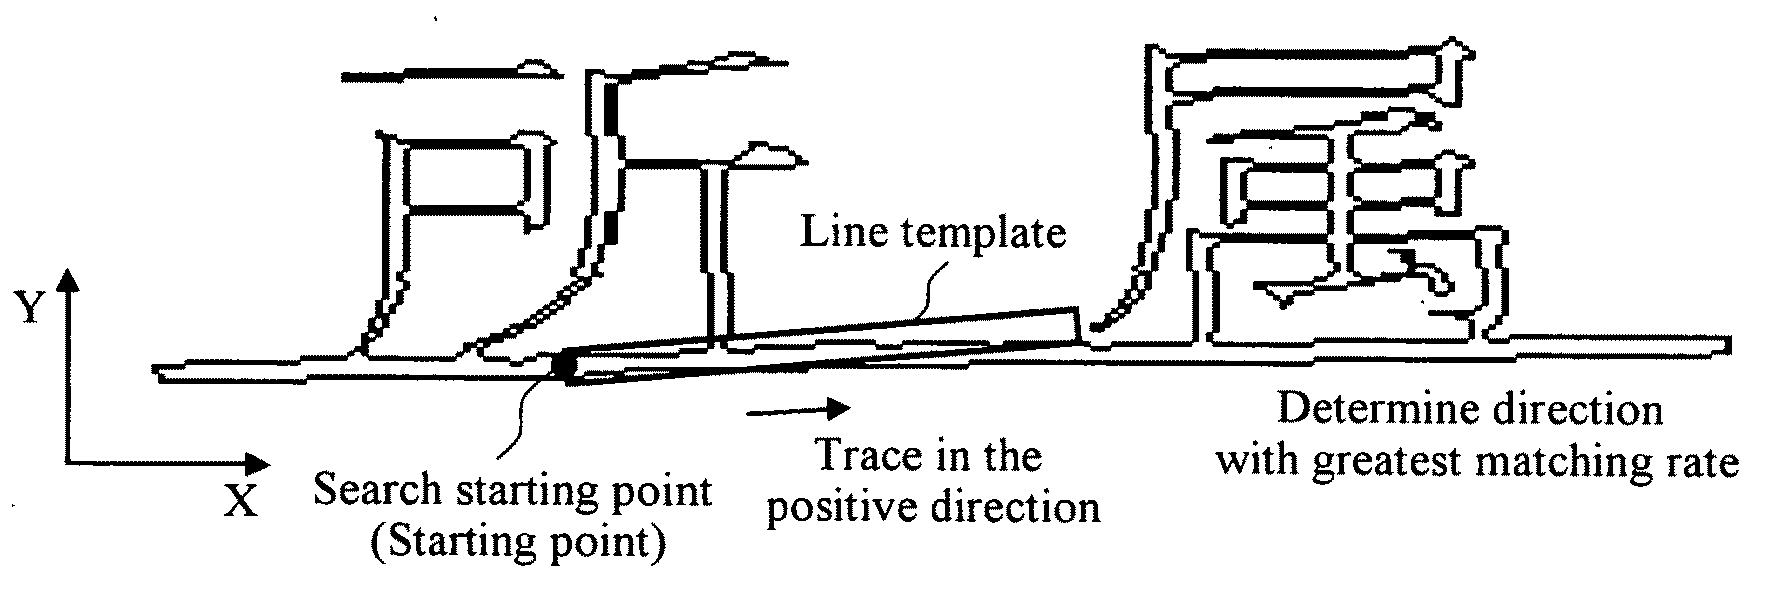 Underline removal apparatus